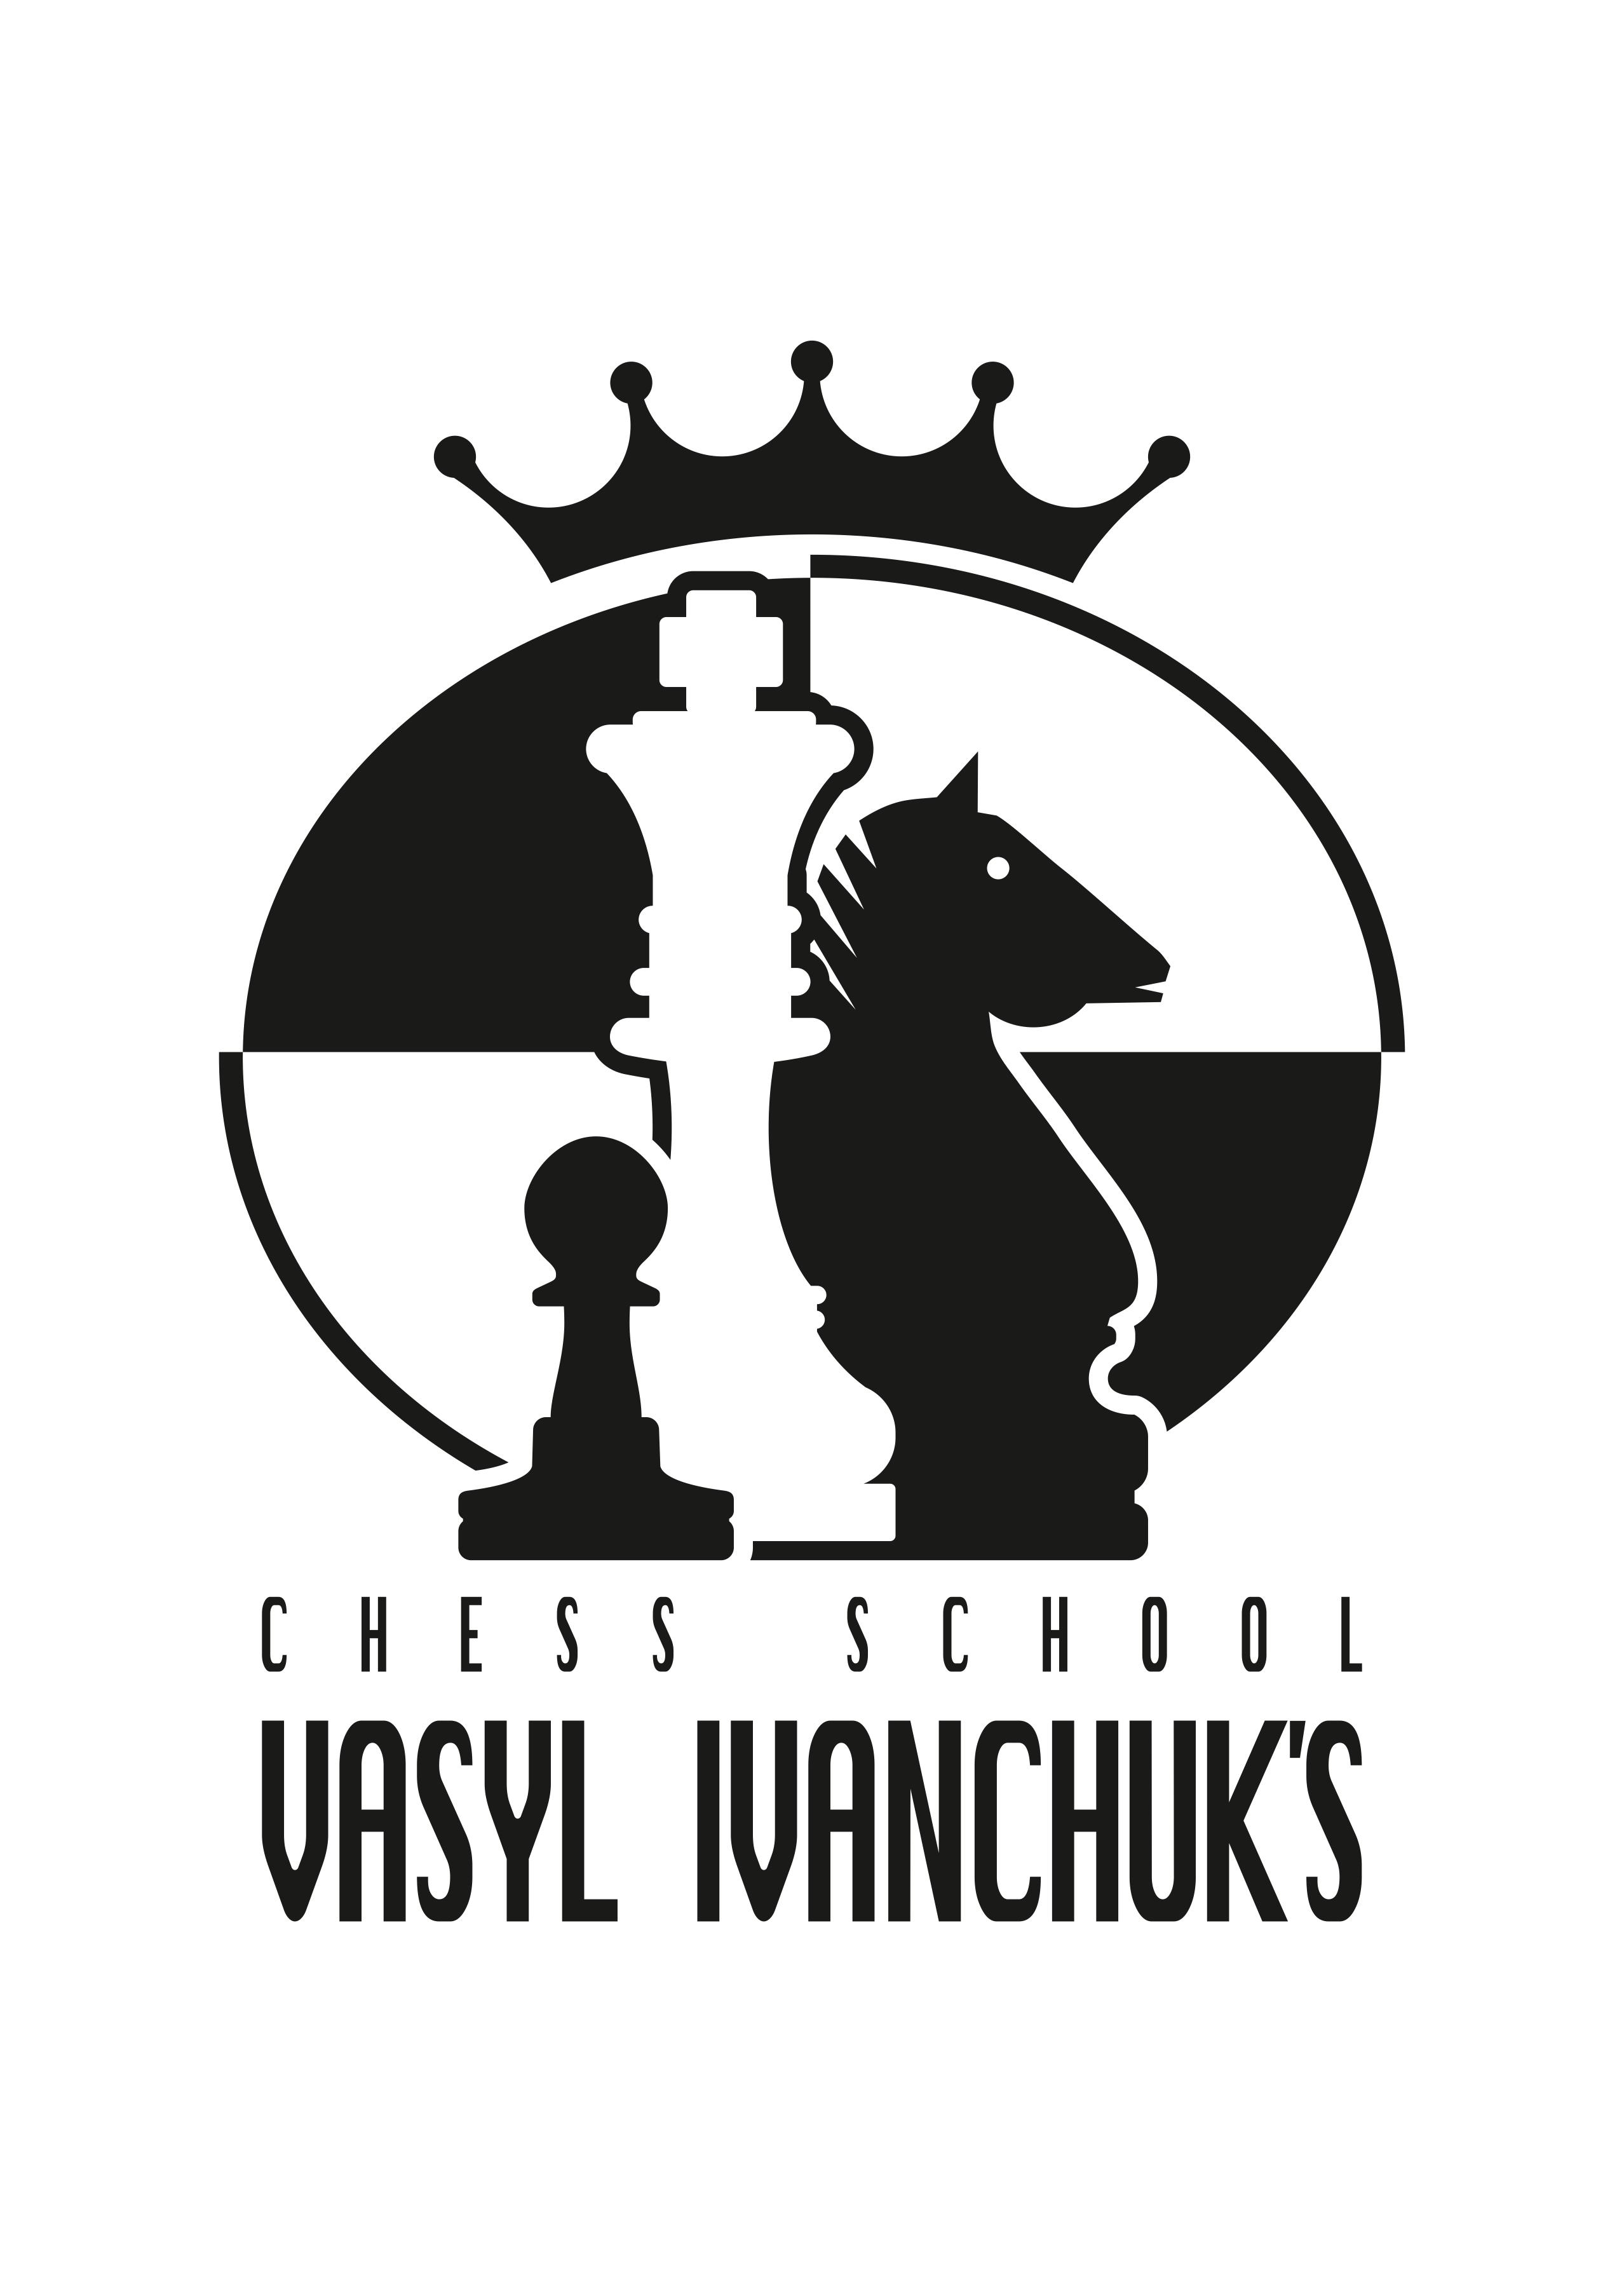 team ichess vn - Chess Club 